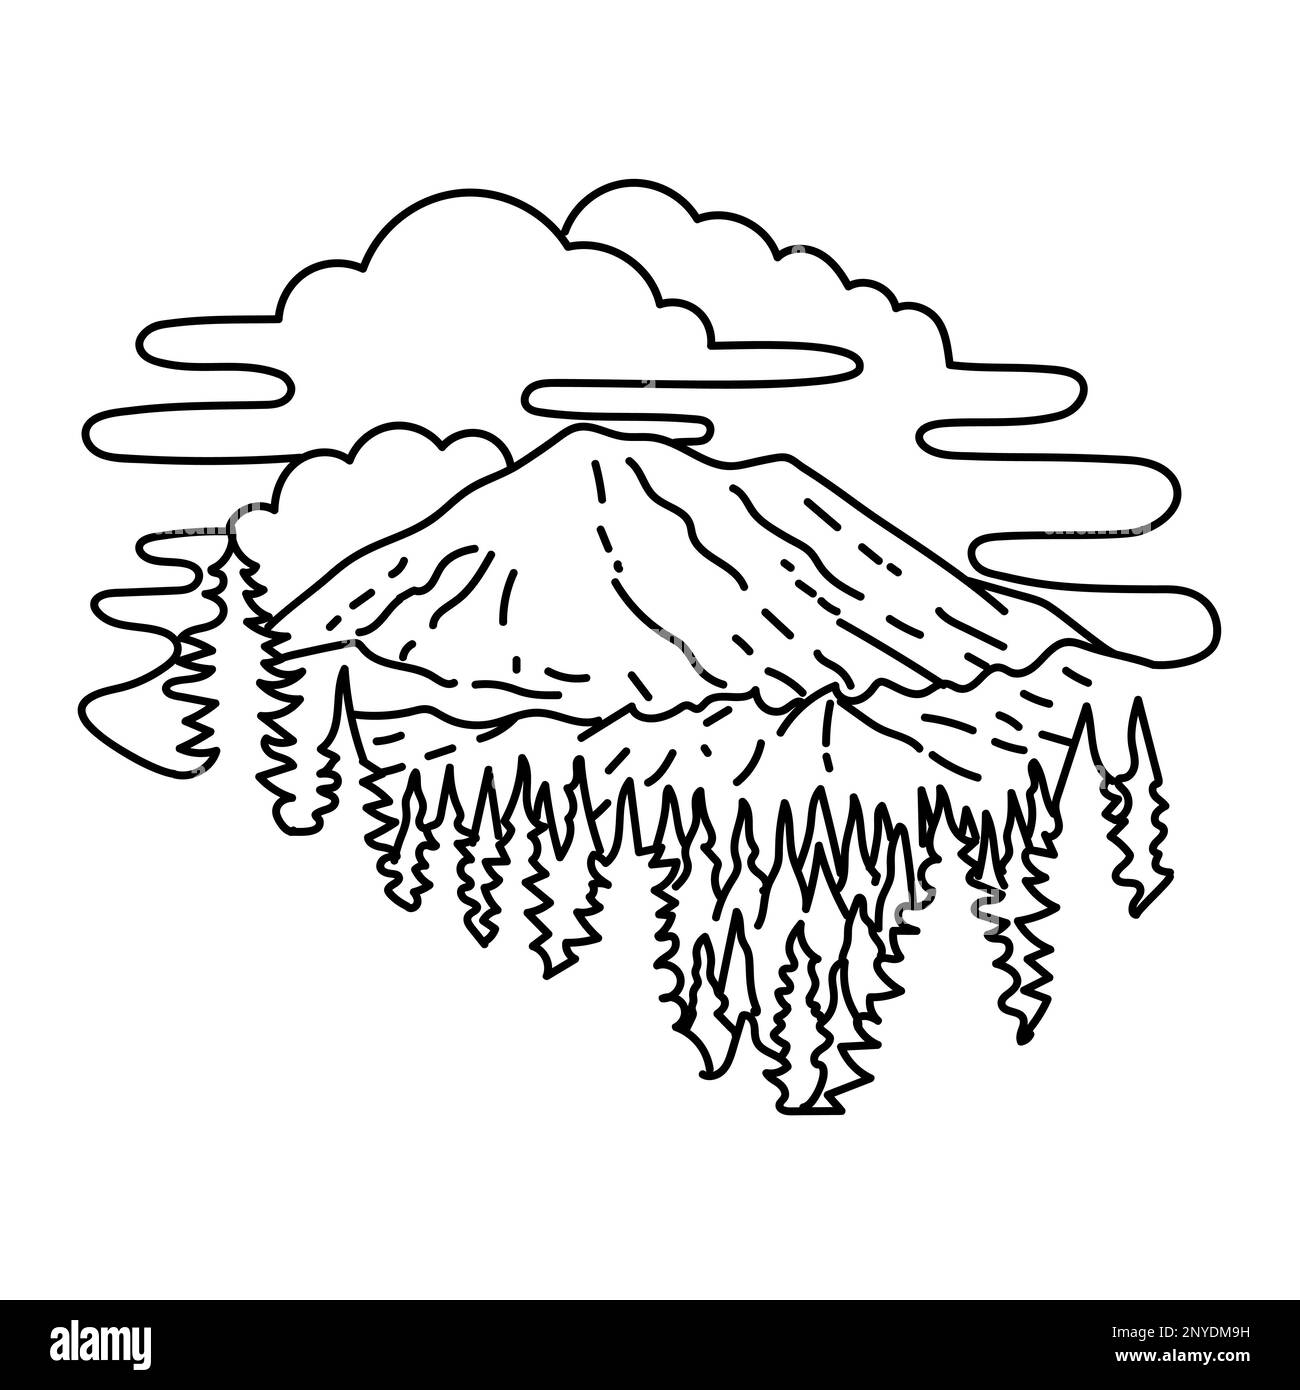 Illustrazione in monocromia del Mount Rainier National Park nello stato di Washington, Stati Uniti fatta in bianco e nero stile di disegno in monocromia. Foto Stock